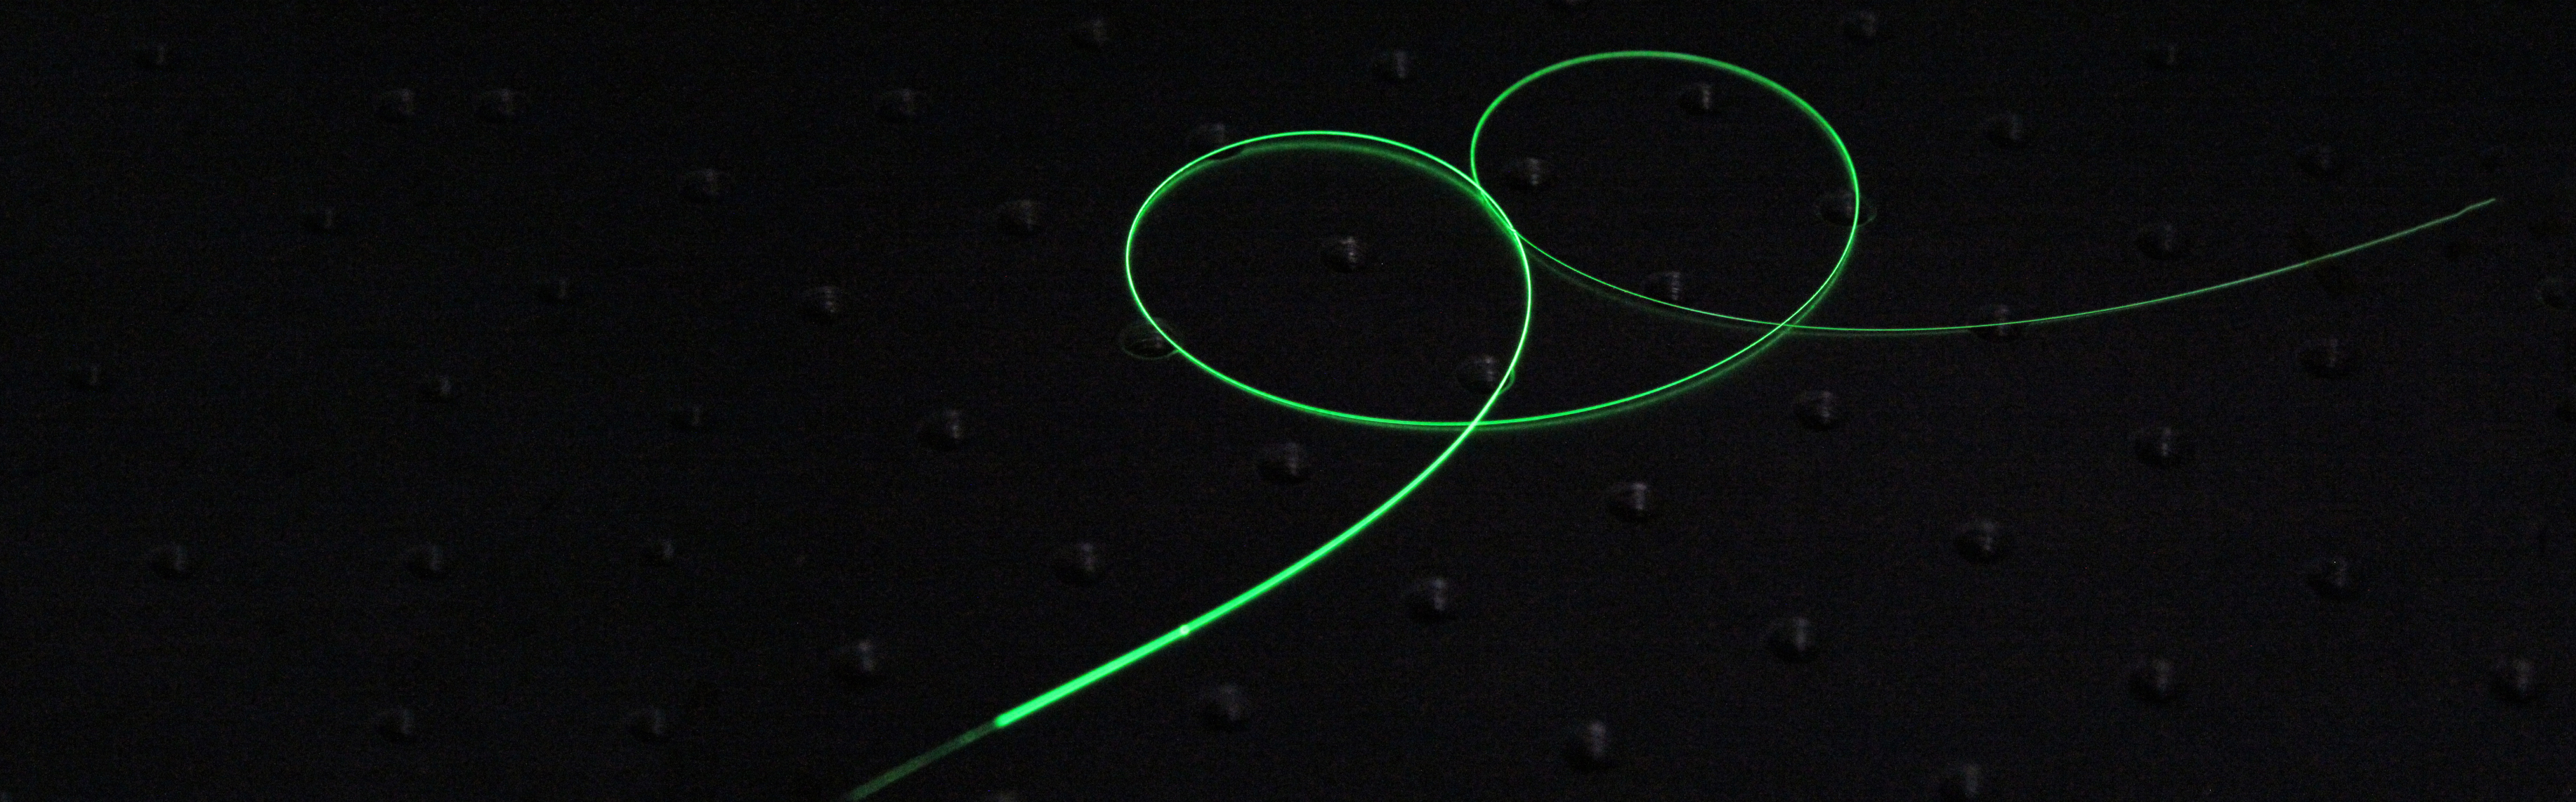 Charakteristisches grünes Leuchten einer aktiven Faser, die eine zentrale Komponente des SLAPCOPS-Lasersystems darstellt.